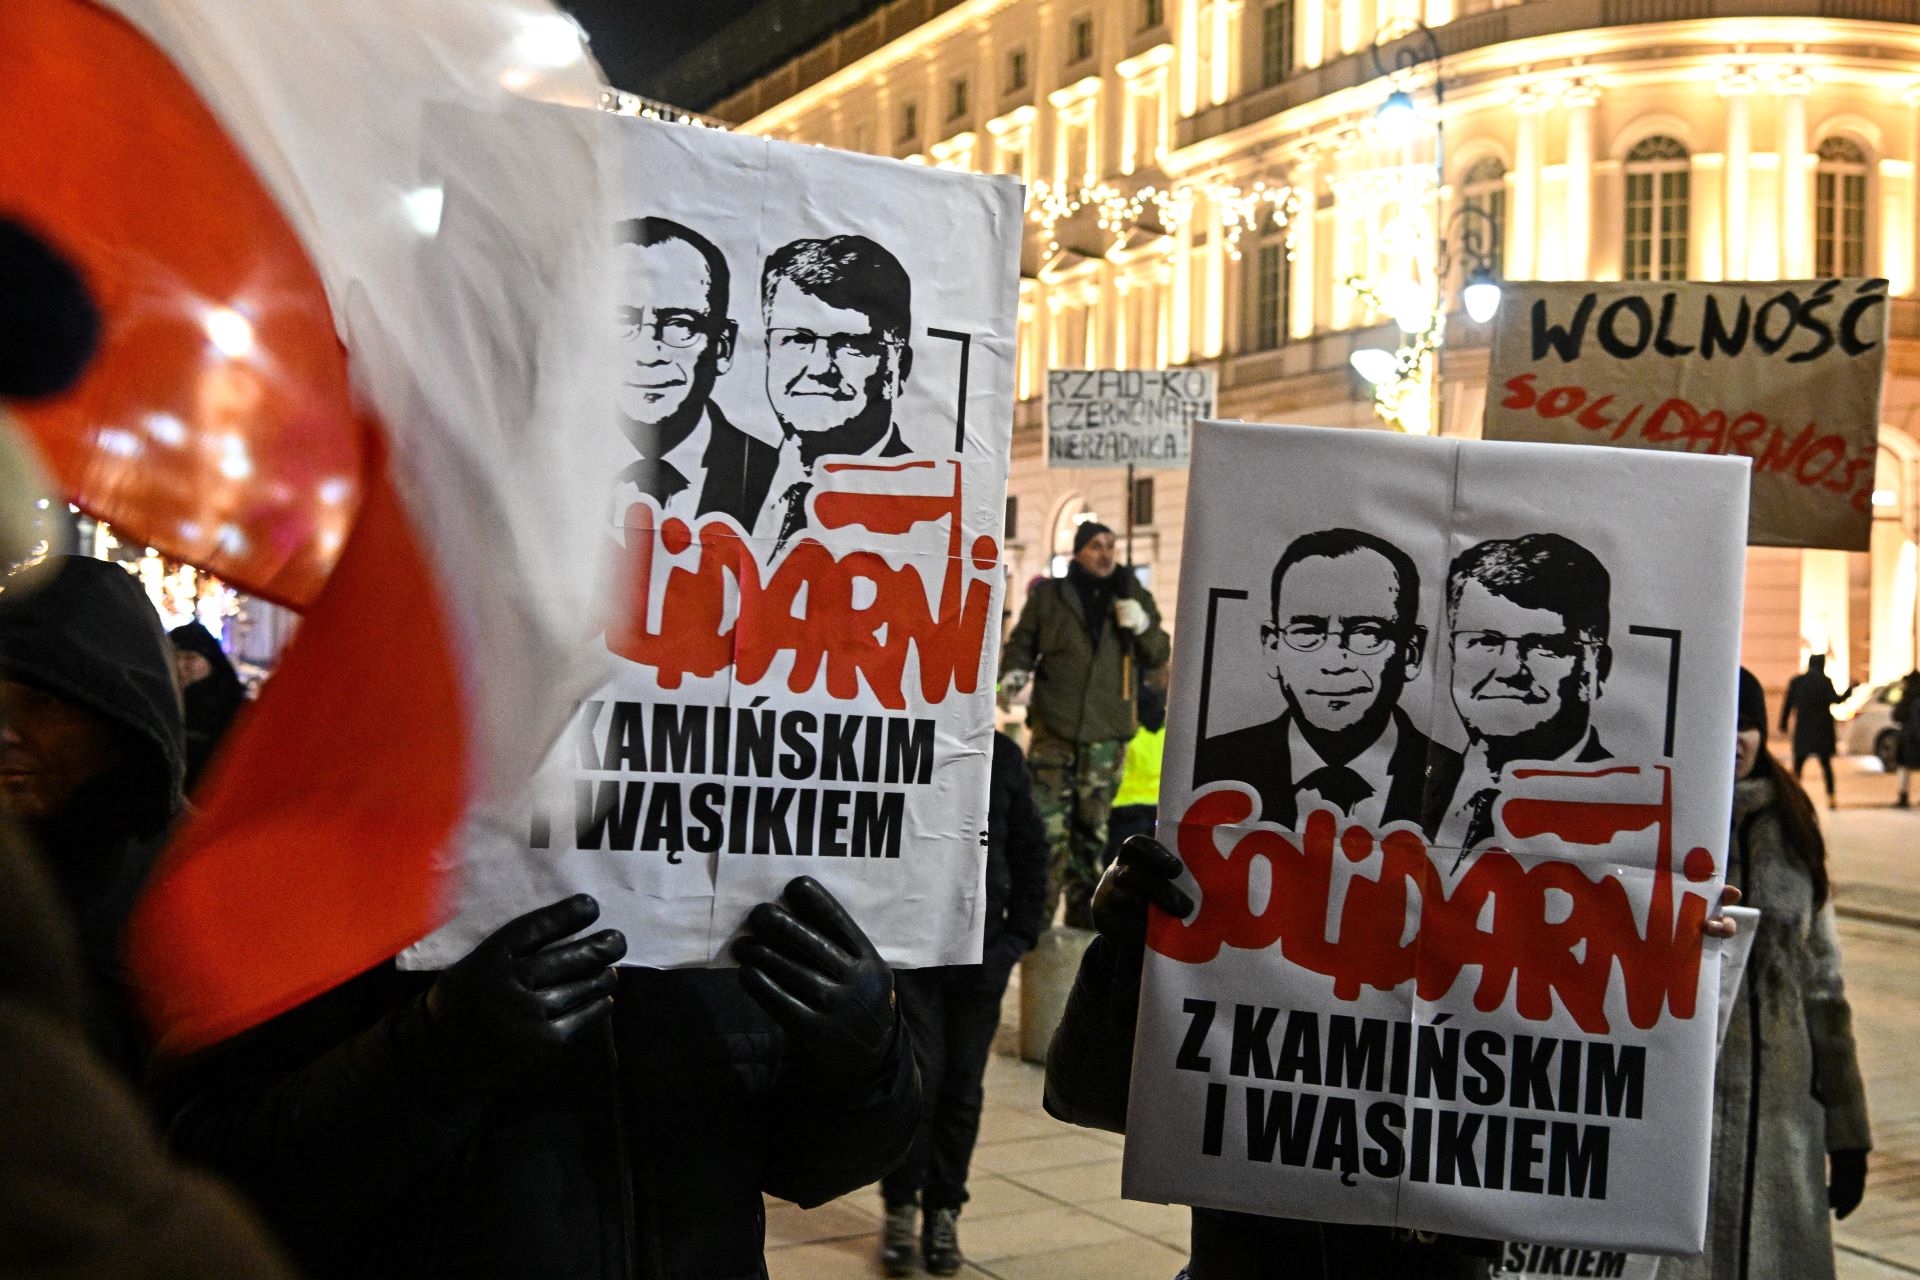 A lengyel elnök újra kegyelmet adott a bebörtönzött képviselőknek